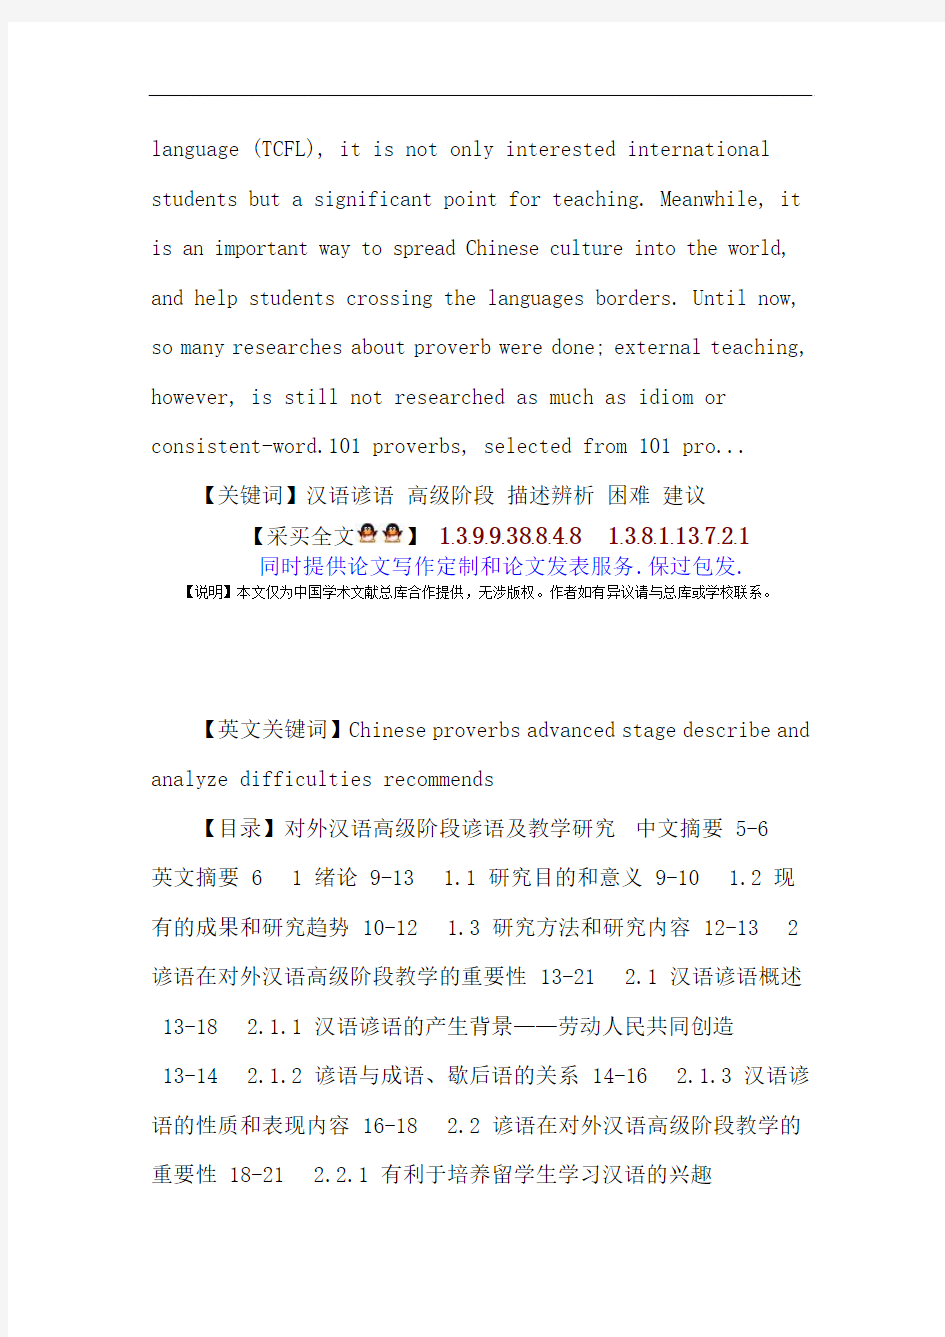 汉语谚语论文：汉语谚语高级阶段描述辨析困难建议